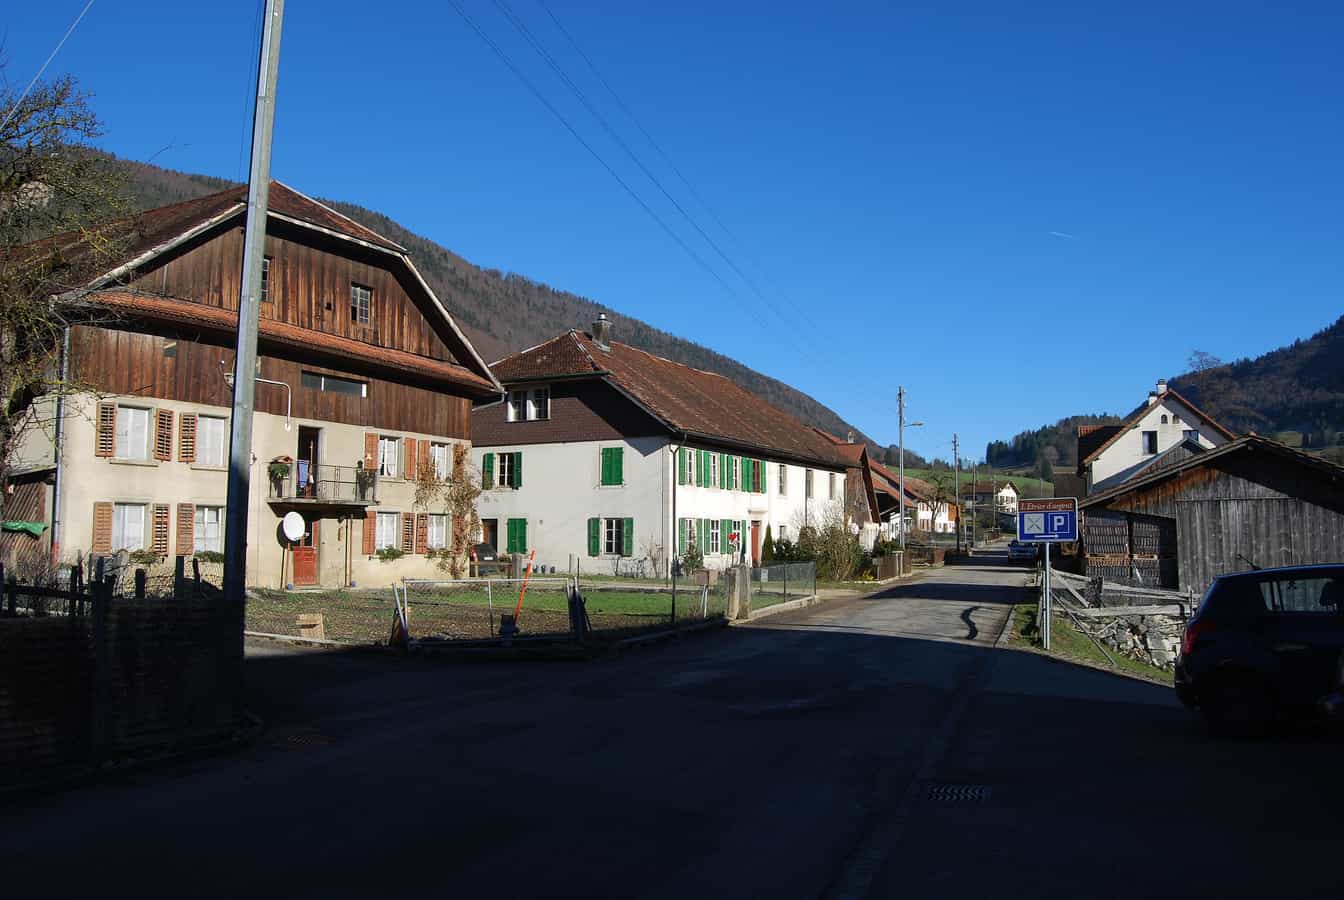 Corcelles, canton de Berne, Suisse